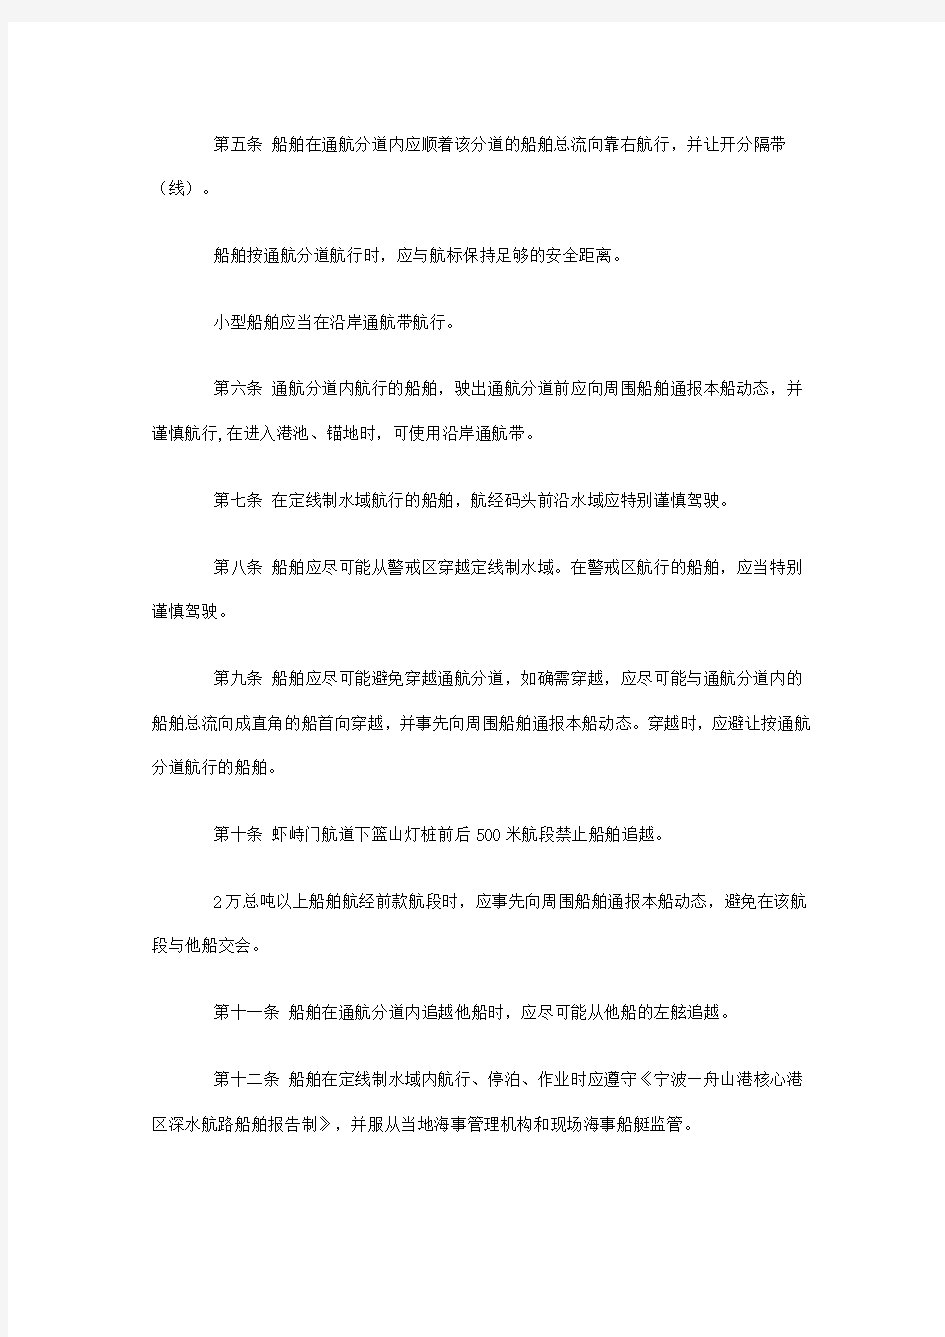 宁波—舟山港核心港区深水航路船舶定线制管理规定